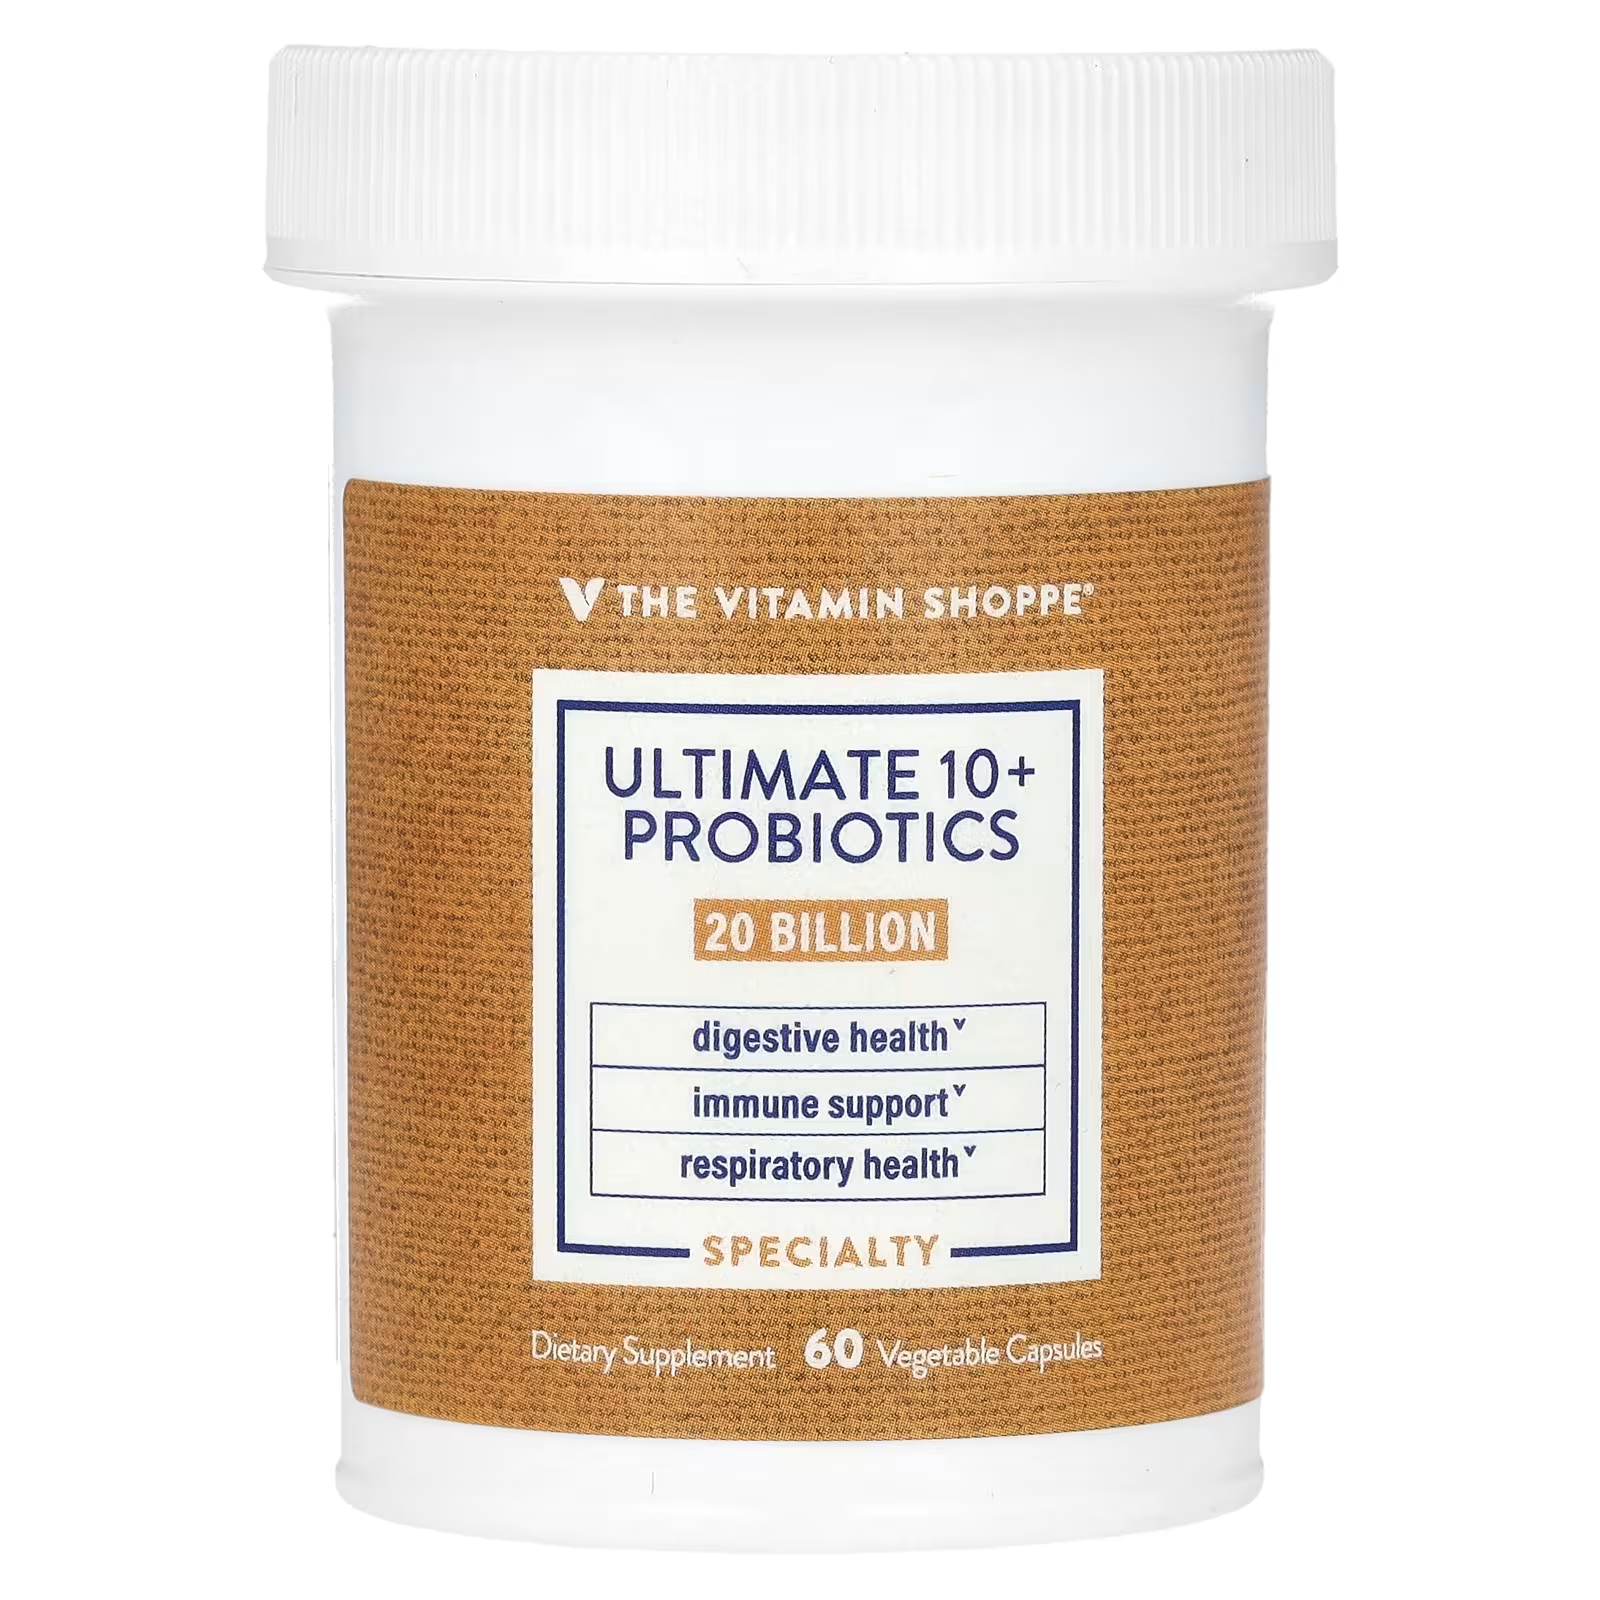 Пищевая добавка The Vitamin Shoppe Ultimate 10+, 60 растительных капсул ultimate 10 пробиотиков 30 миллиардов кое 60 растительных капсул the vitamin shoppe